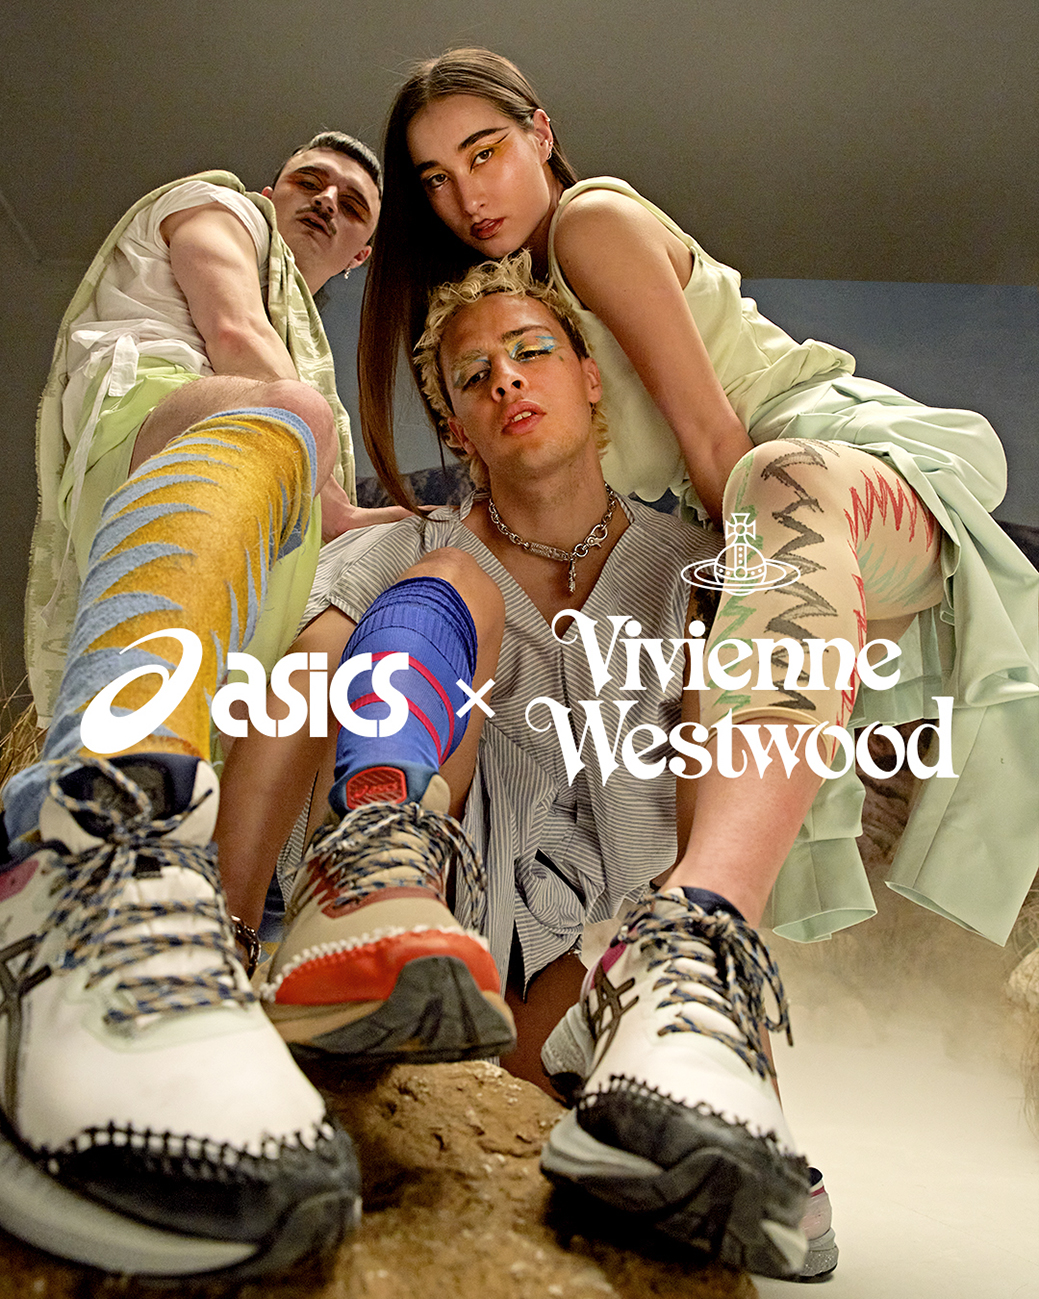 打造隽永的街头风格! ASICS x Vivienne Westwood 全新联名GEL-KAYANO 